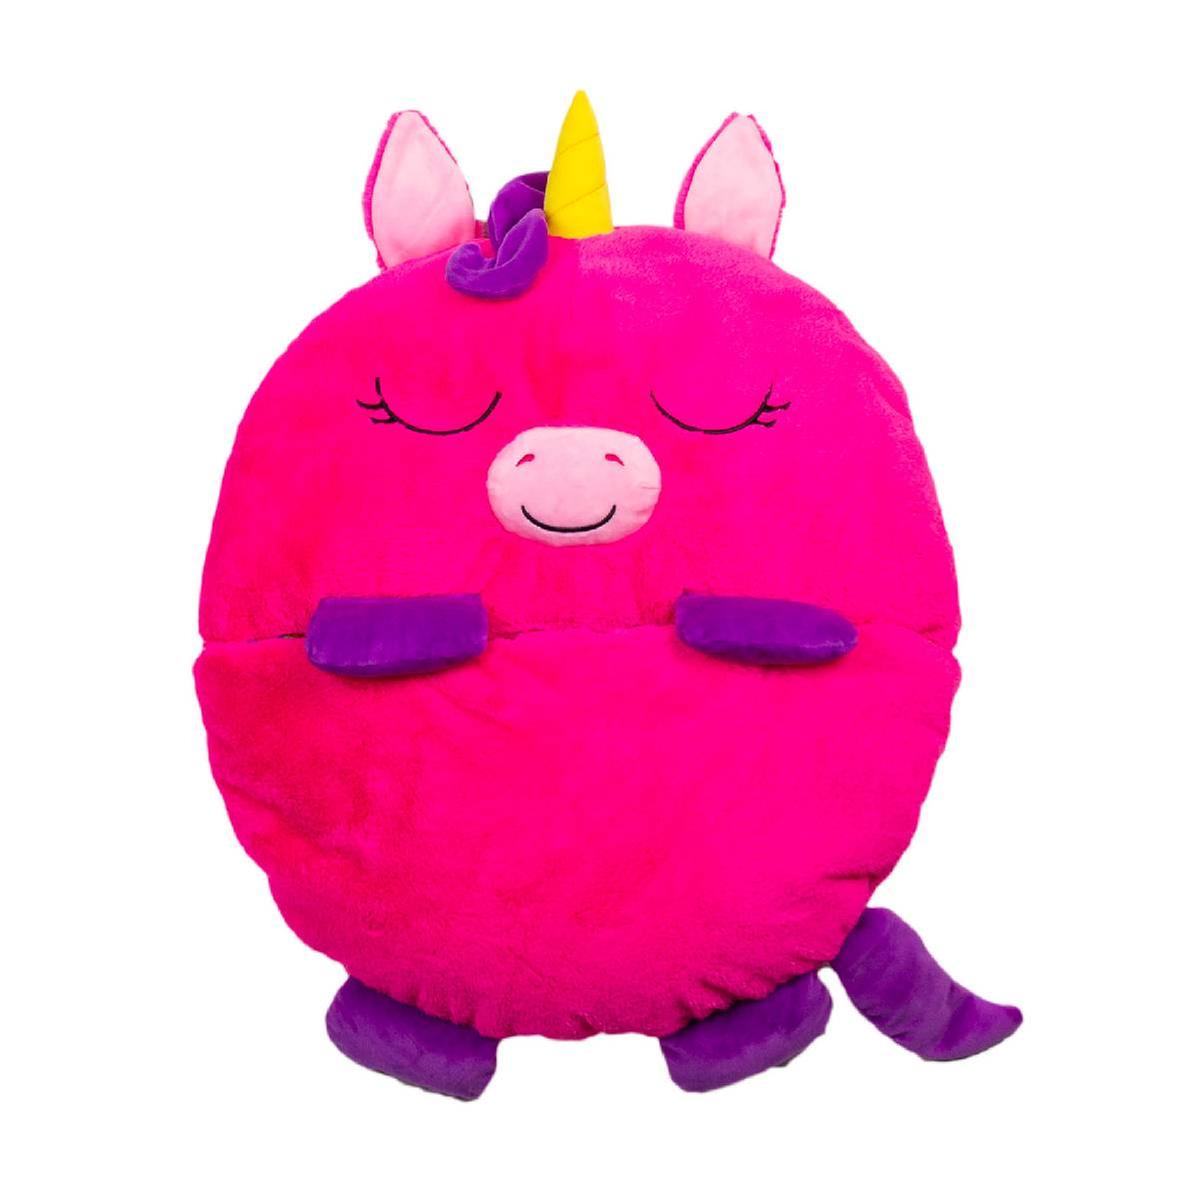 Dormi Locos - Peluche unicornio rosa grande, Peluches Tv